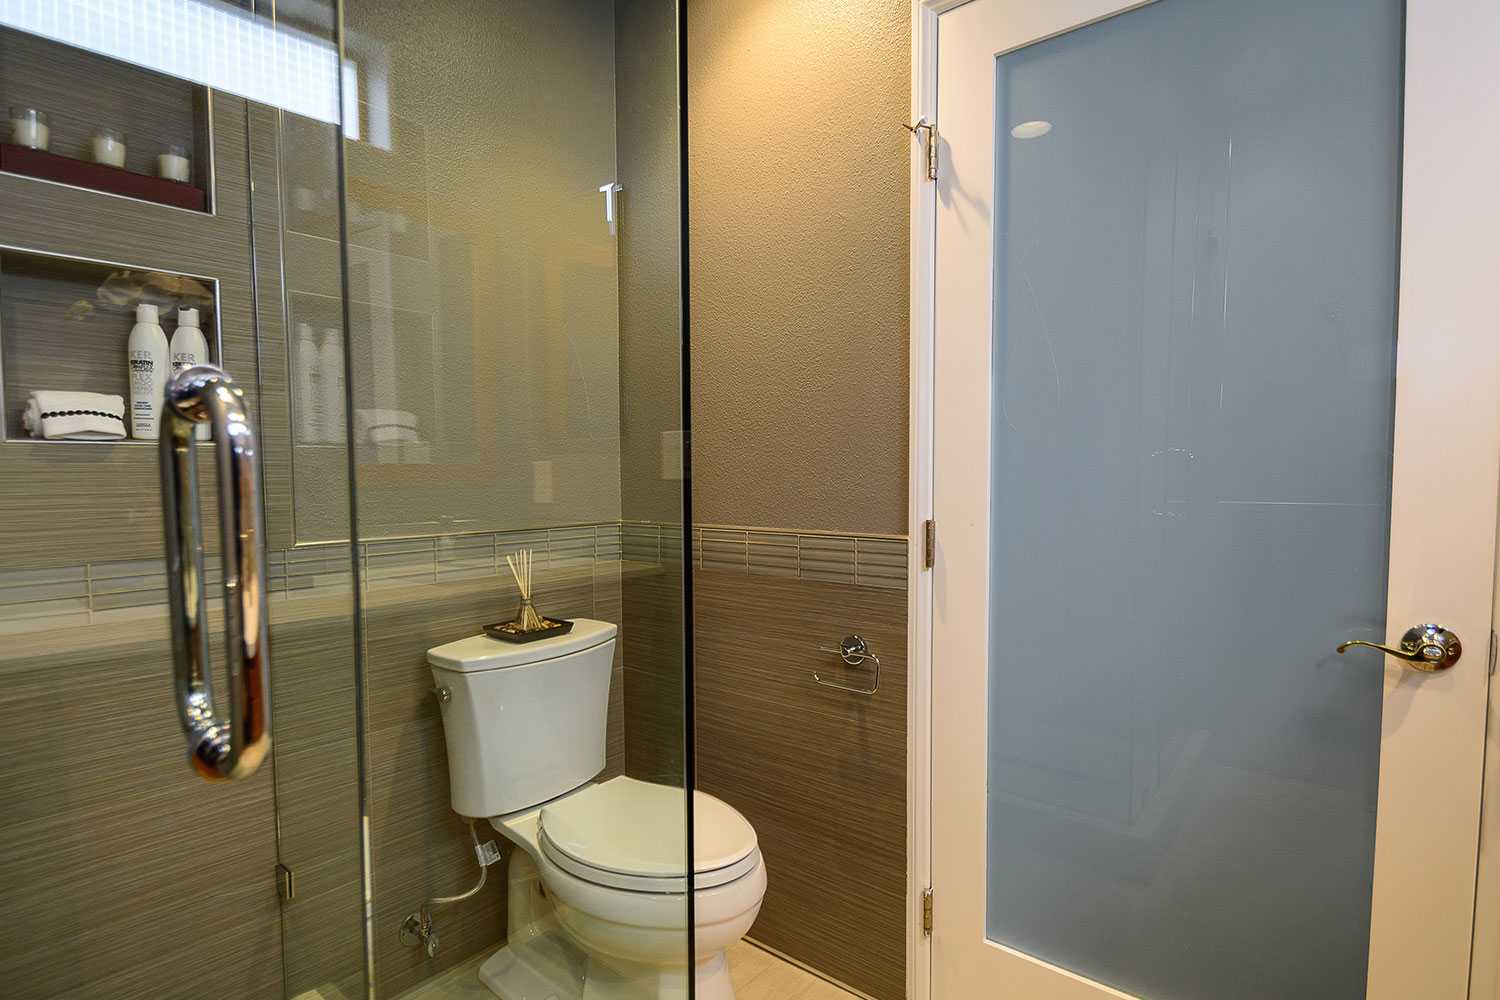 Двери в ванной комнате фото. Дверь в ванную комнату. Двери туалет и ванна. Дверь в санузел. Дверь для ванной комнаты и туалета.